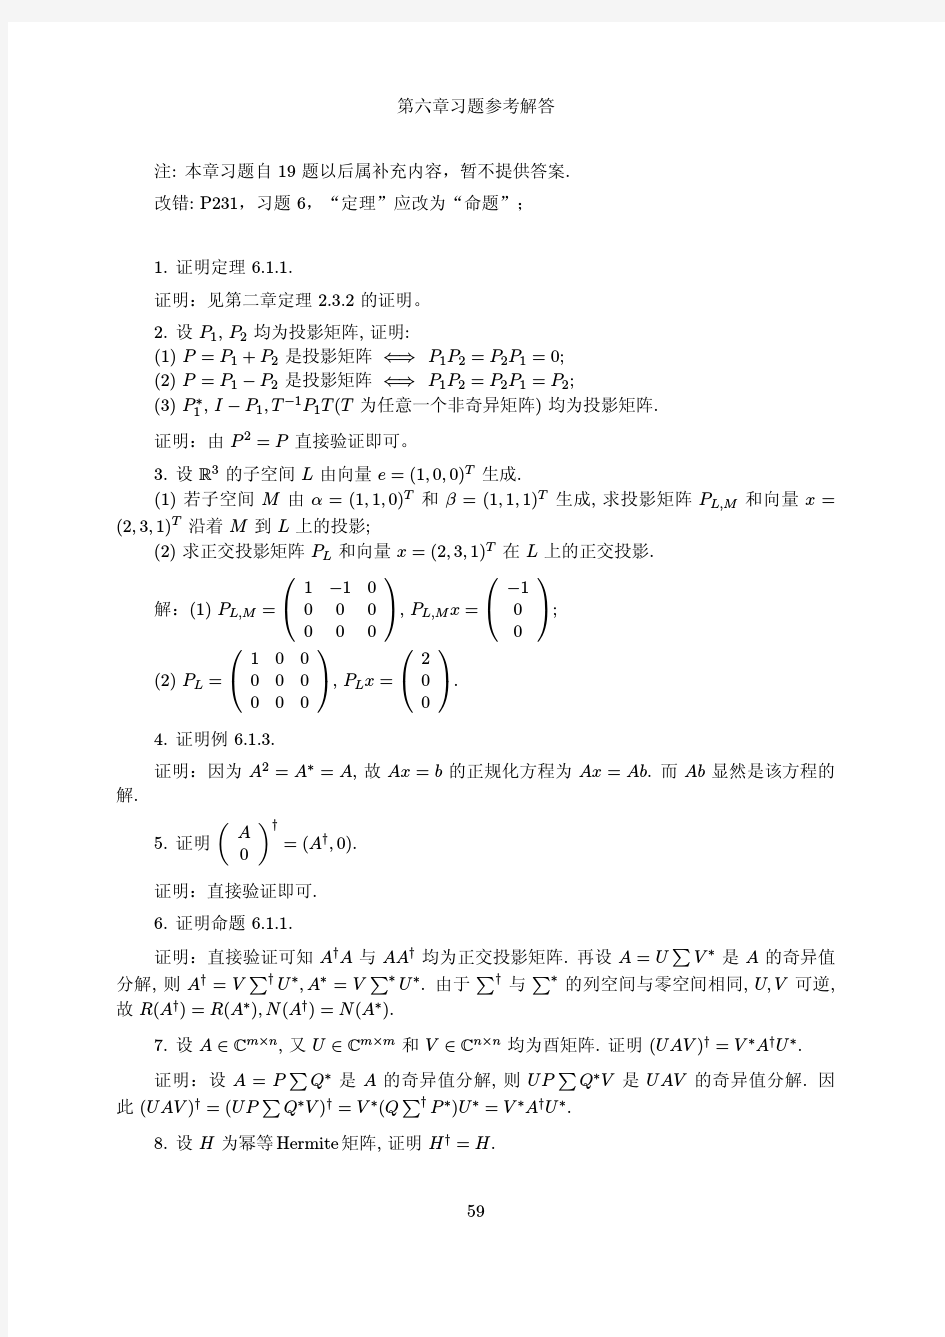 矩阵理论与应用(张跃辉)(上海交大)第六章参考答案